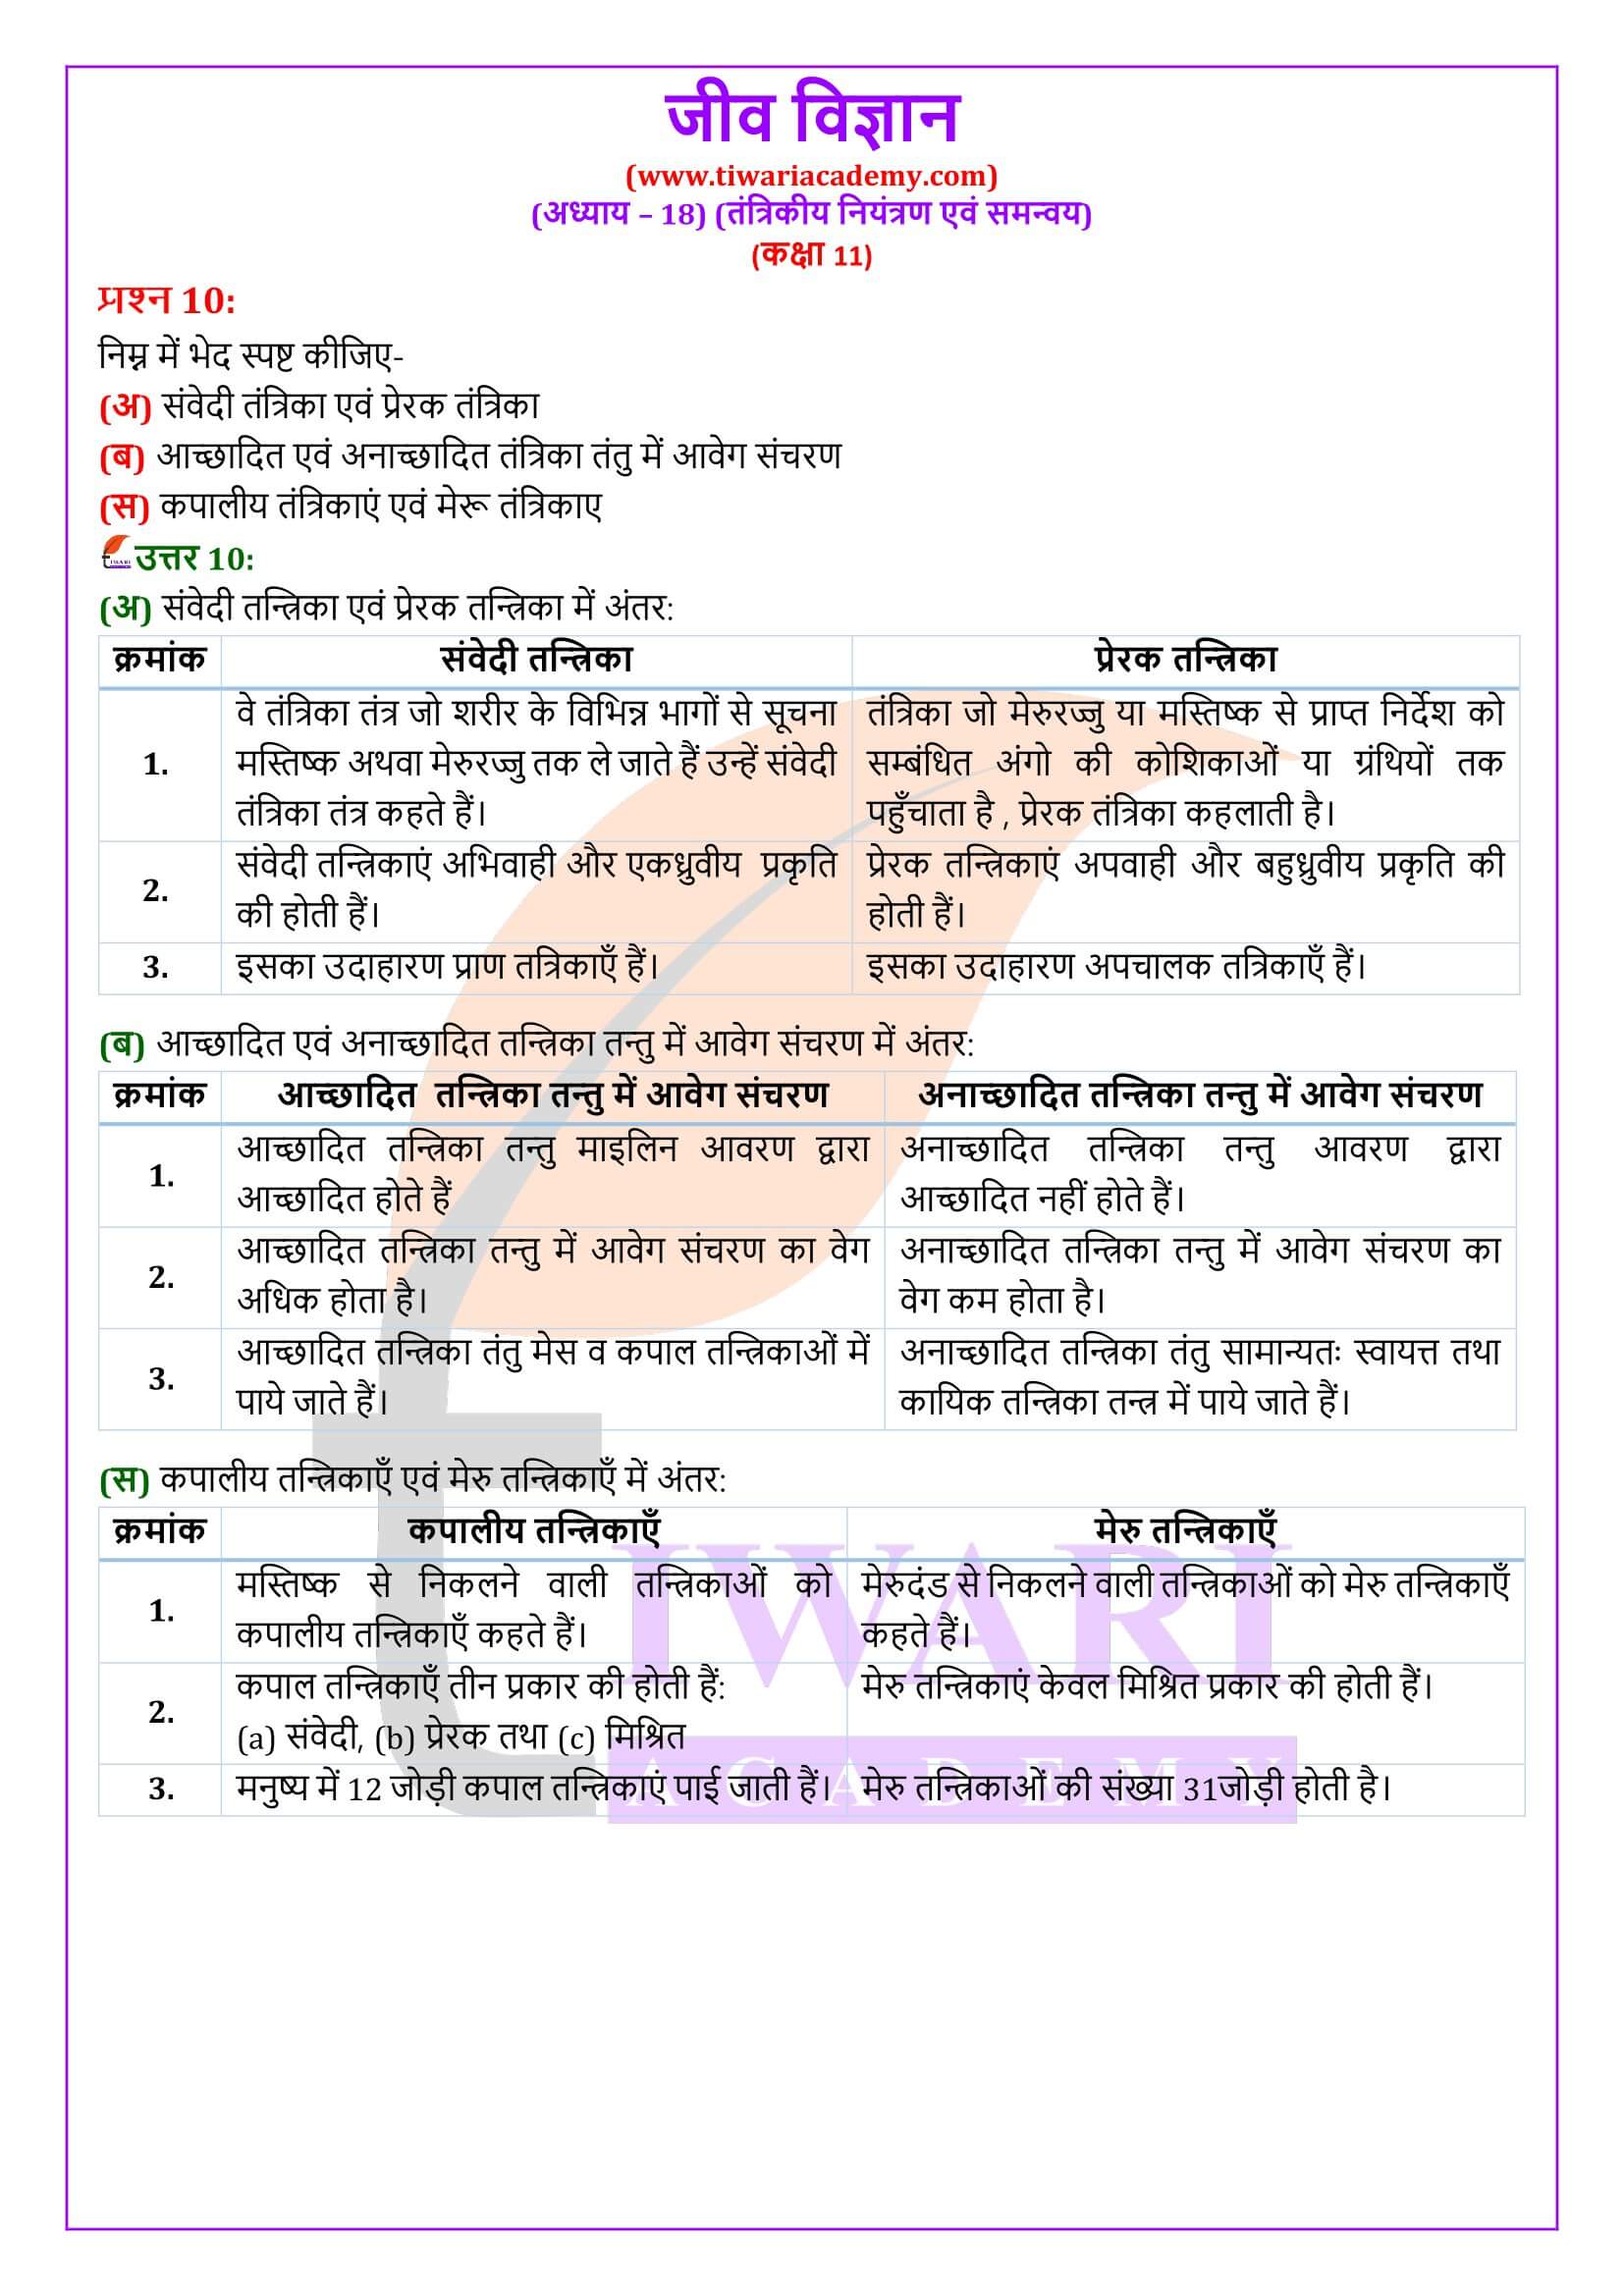 कक्षा 11 जीव विज्ञान अध्याय 18 के प्रश्न उत्तर हिंदी में